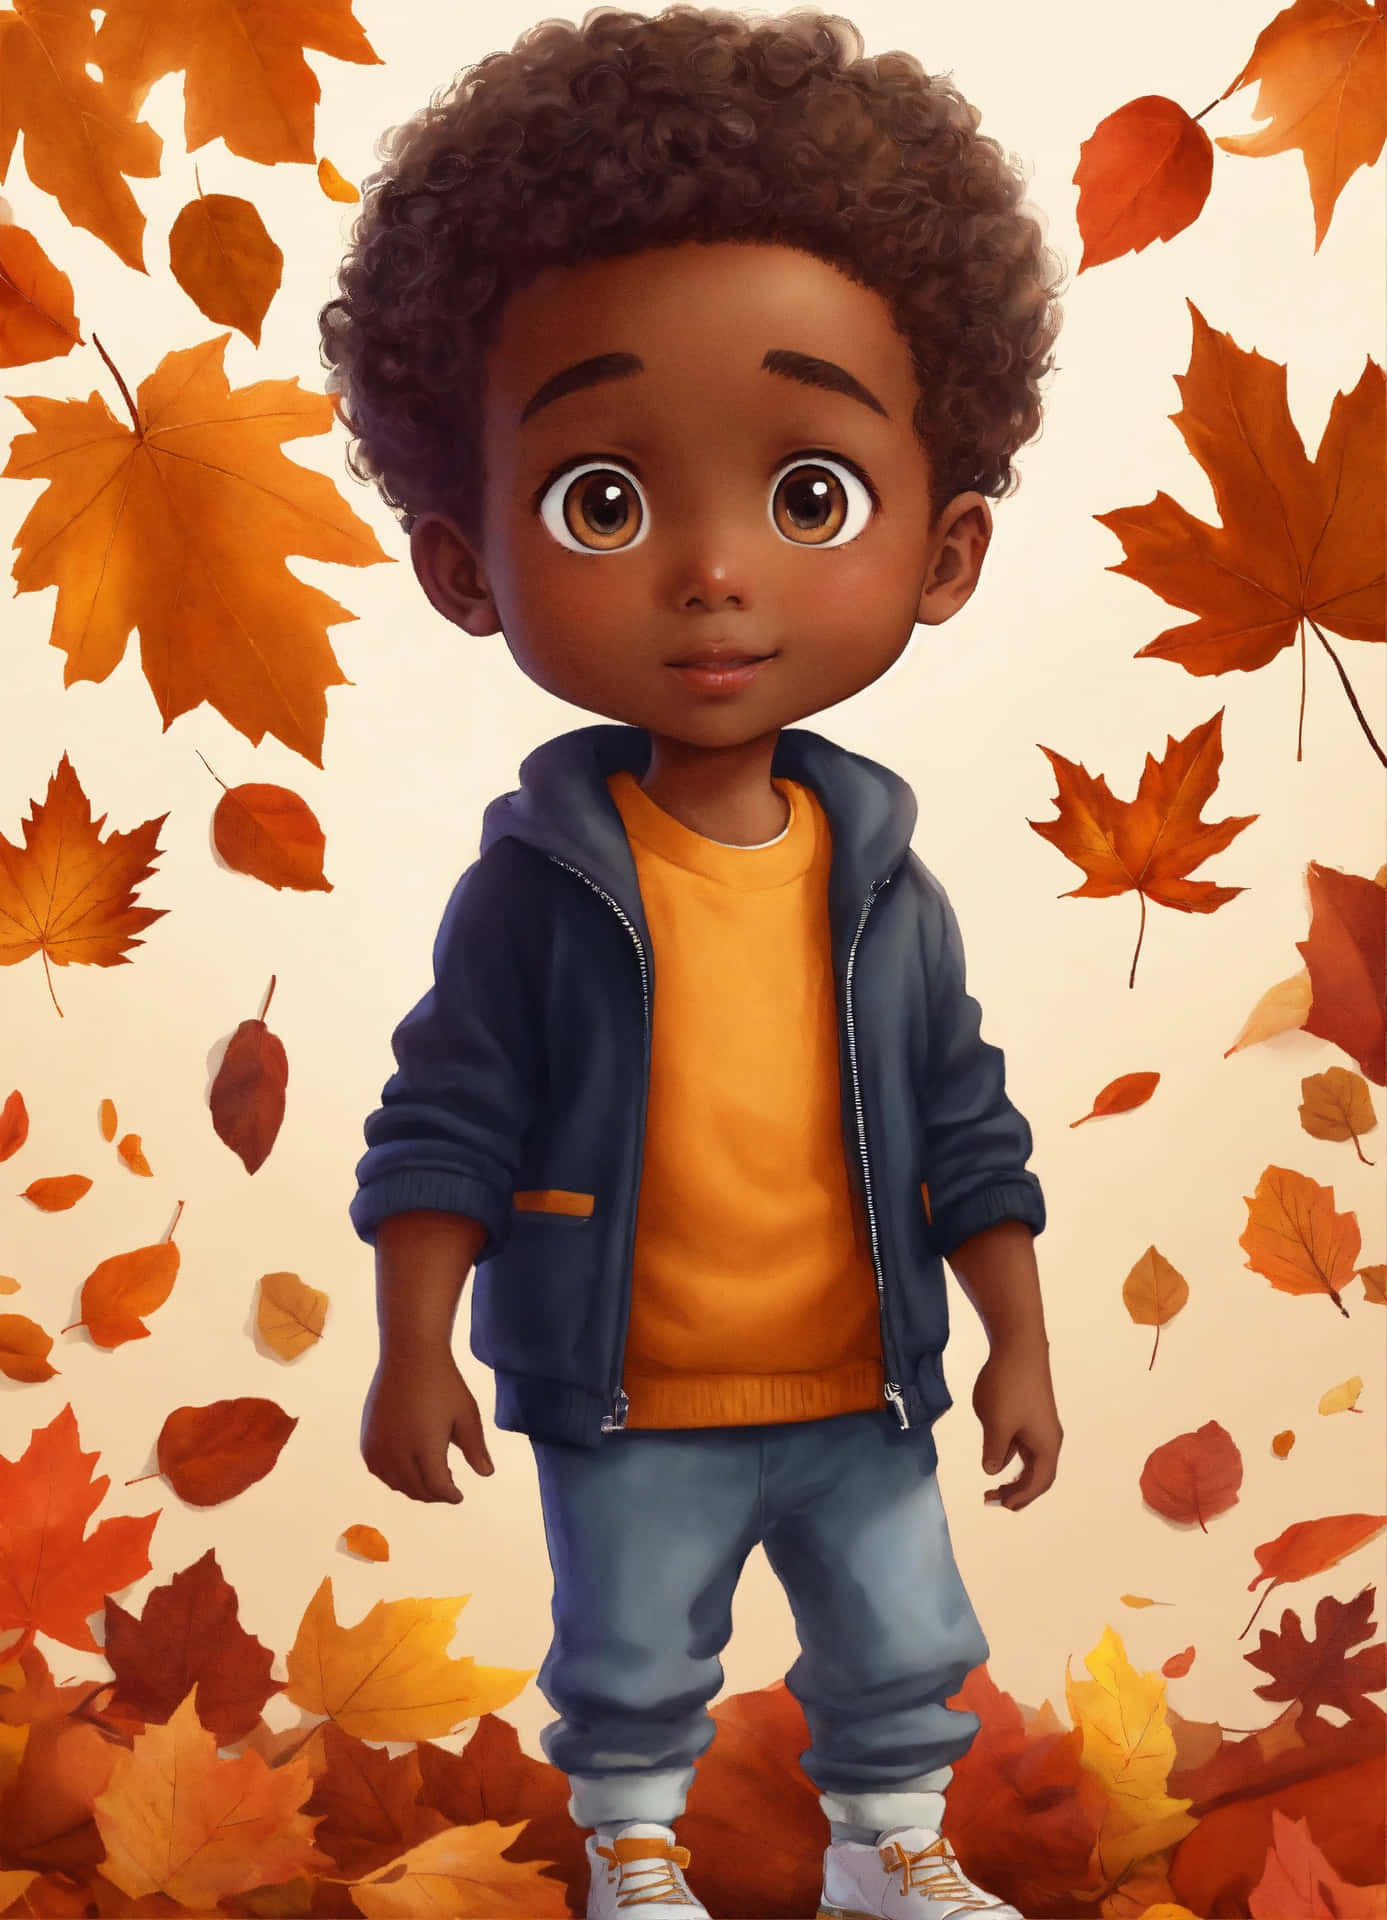 Autumn Child Illustration Wallpaper